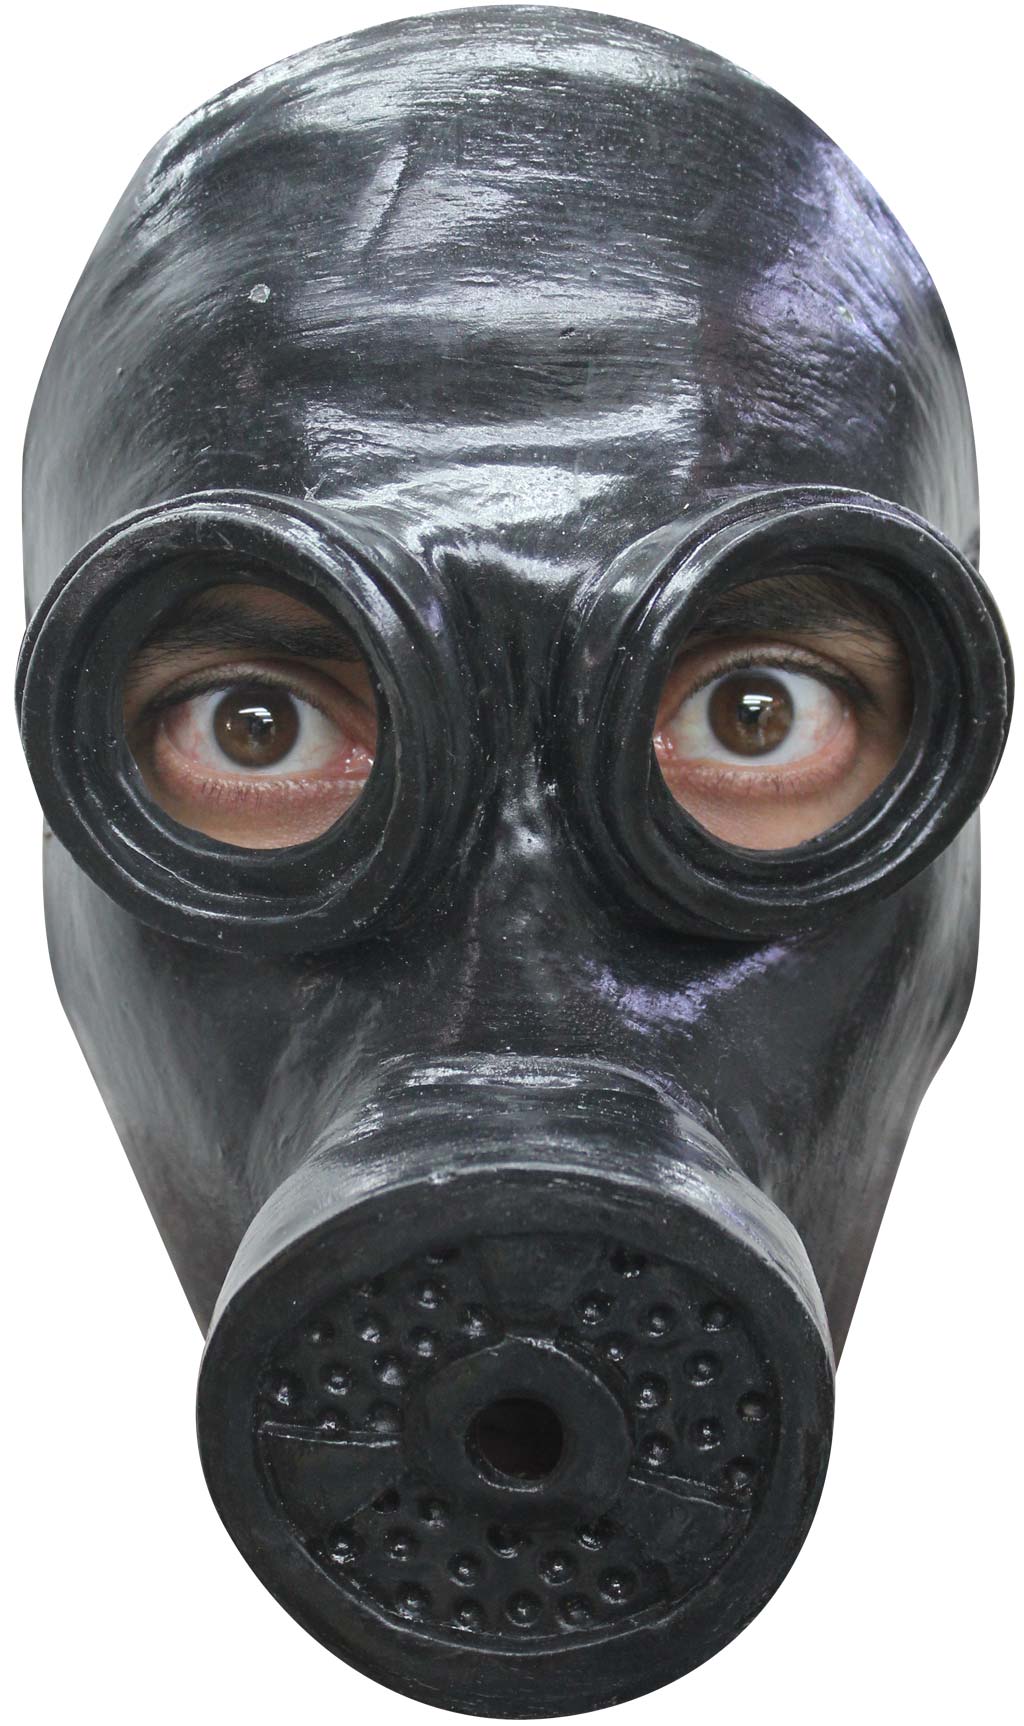 Gasschutzmaske aus Latex